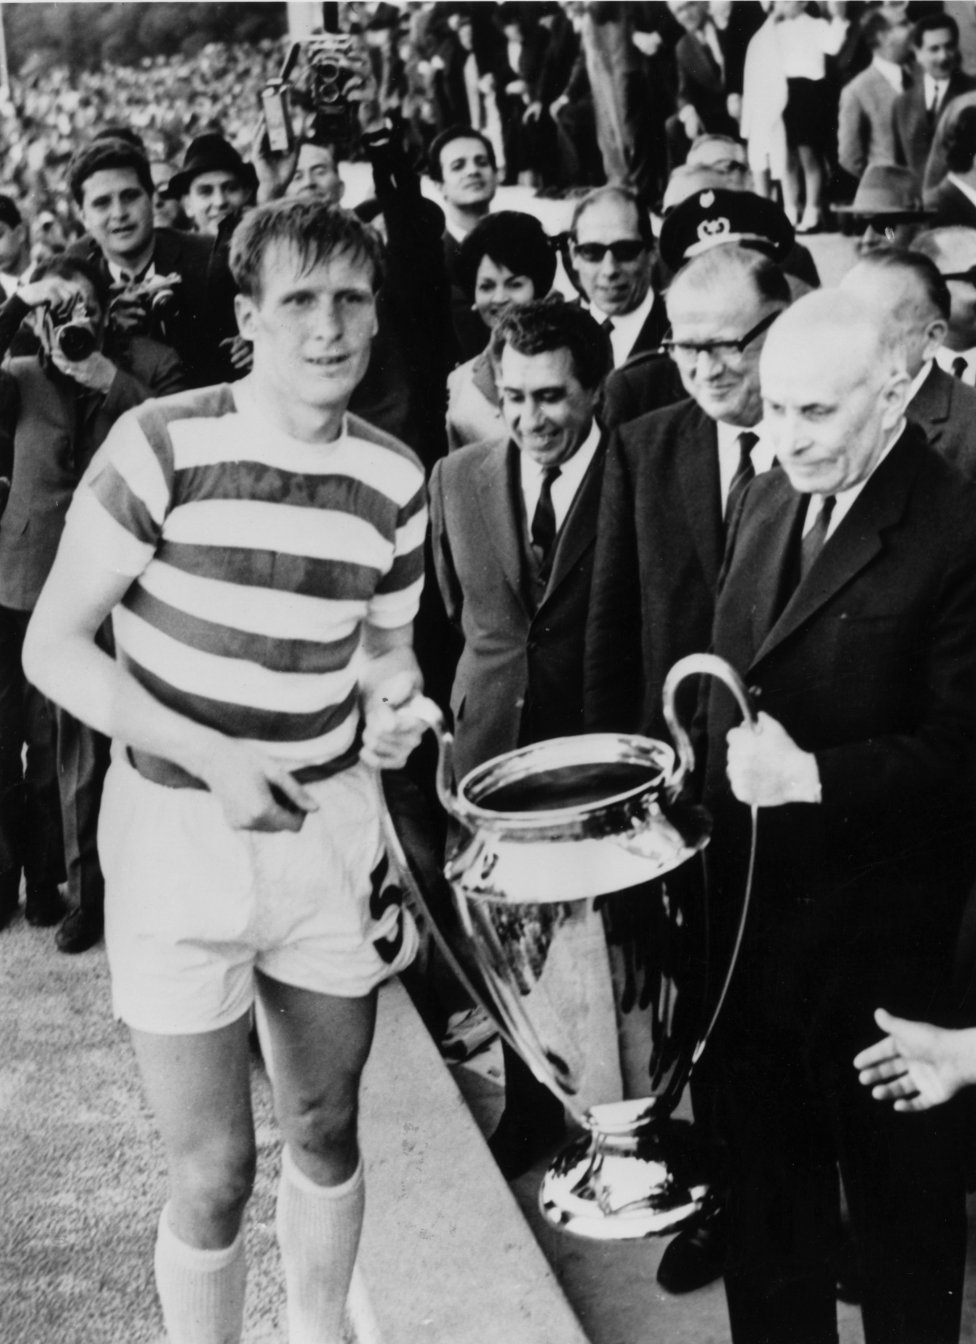 Celtic - campeón 1967  El 30 de mayo de 1967 el Celtic se midió al Inter de Milán en la final de la Copa de Europa en el Estadio Nacional de Lisboa ante 56.000 espectadores. El equipo escocés ganó al italiano por 2-1 con goles de Gemmell y Chalmers, Mazzola marcó el gol de los milaneses. 